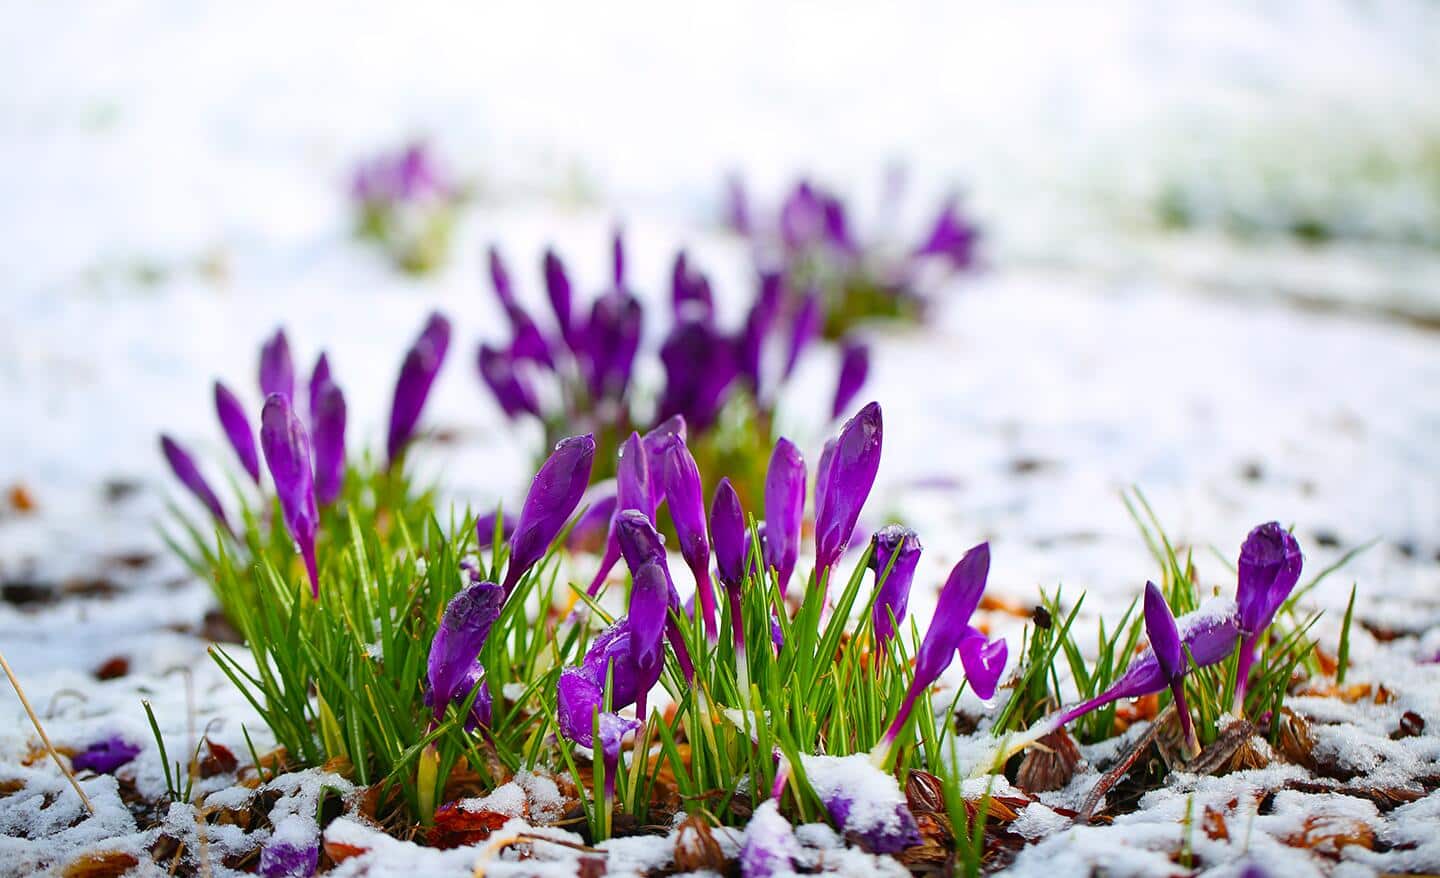 Purple crocus in snow-covered garden